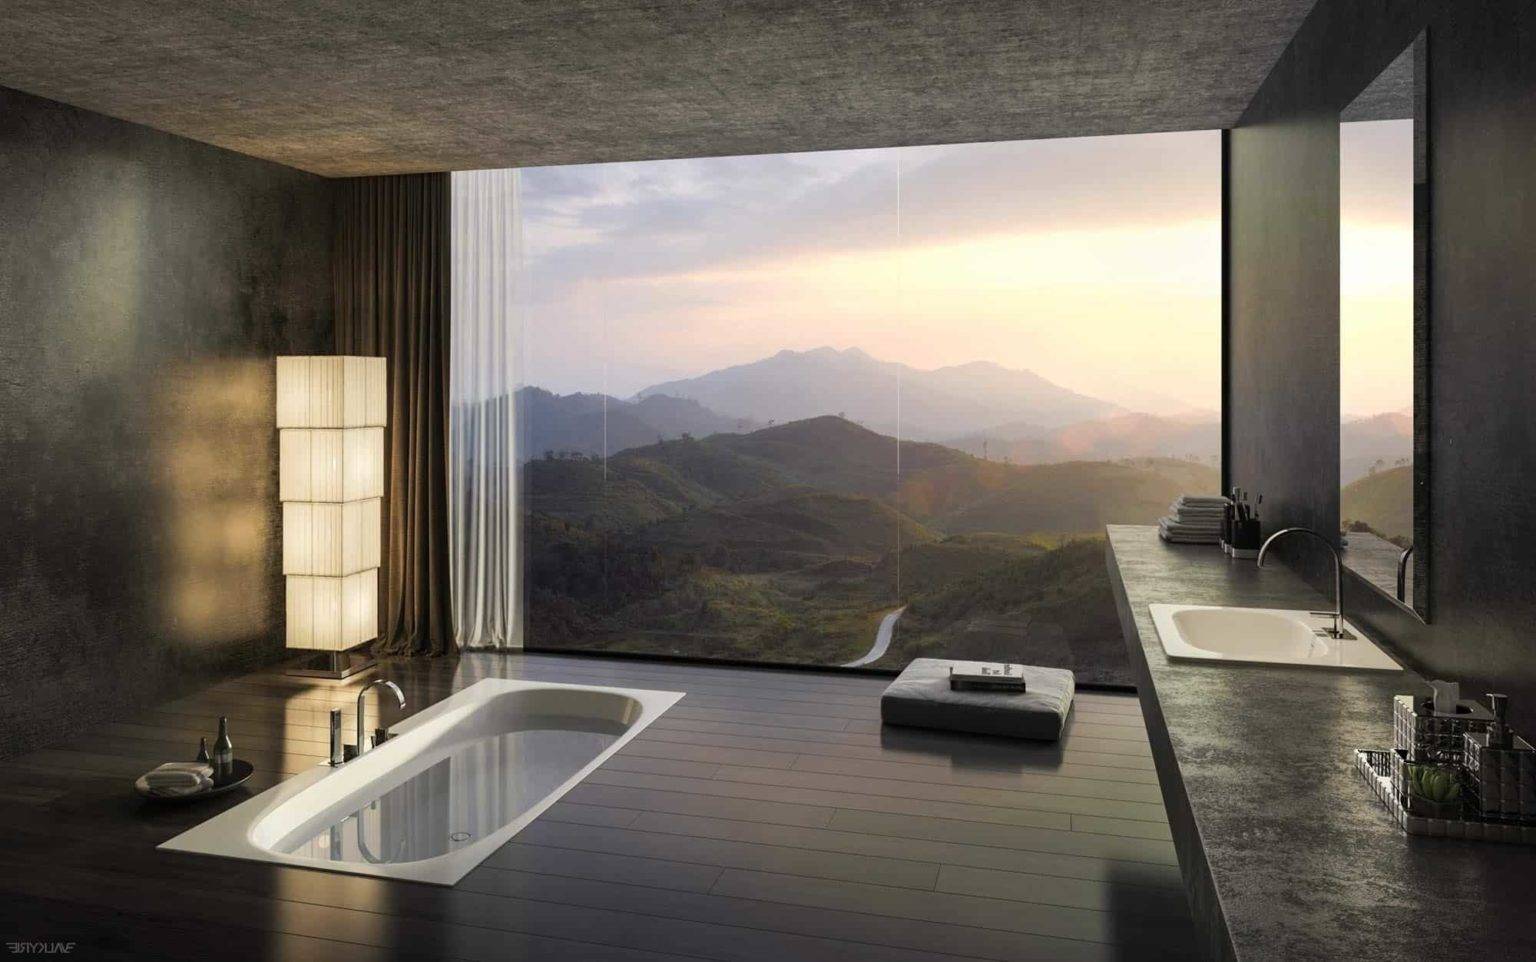 Phòng tắm rộng rãi tuyệt đẹp với bồn tắm chìm trên sàn gỗ, tường kính trong suốt nhìn ra khung cảnh núi non thơ mộng. Hình ảnh đẹp như một bức tranh sơn thủy đắt giá khiến bao người mơ ước được sở hữu.